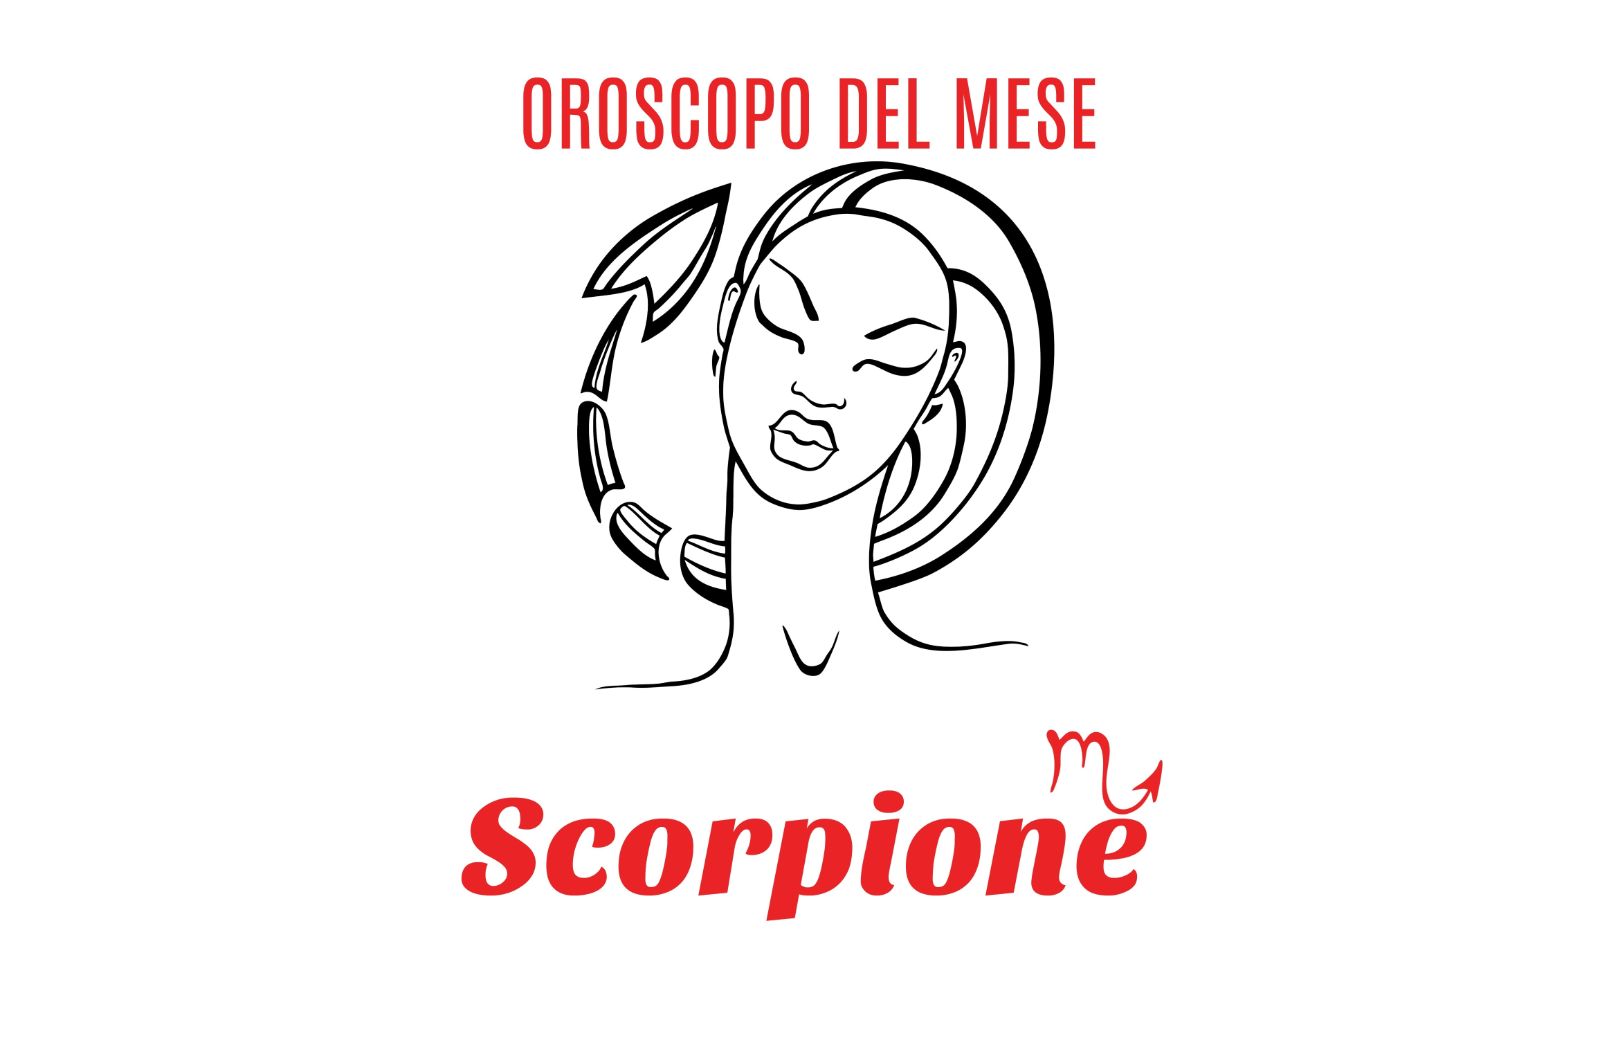 Oroscopo del mese: Scorpione - aprile 2018